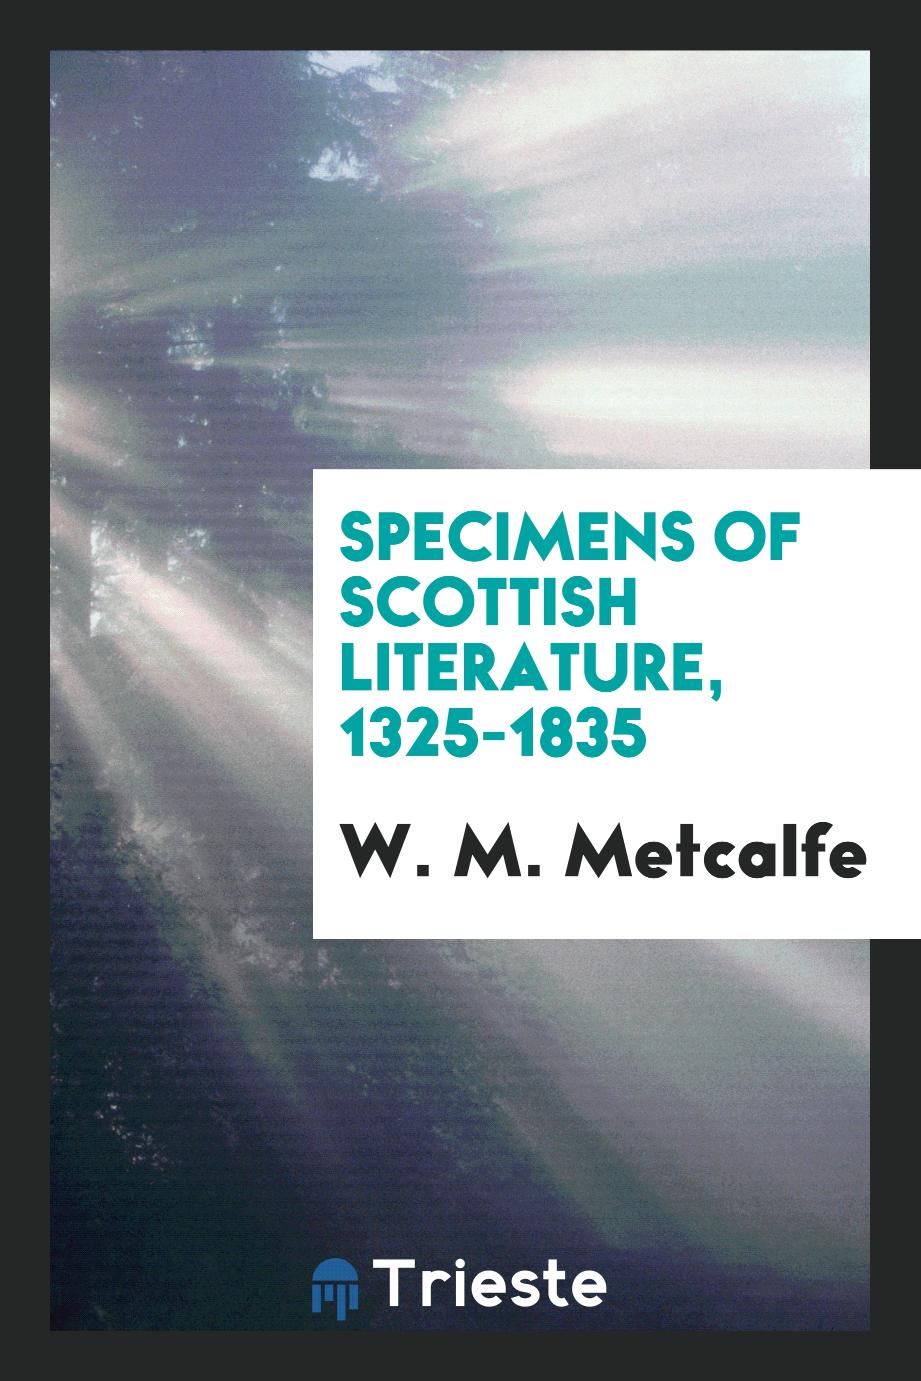 Specimens of Scottish literature, 1325-1835